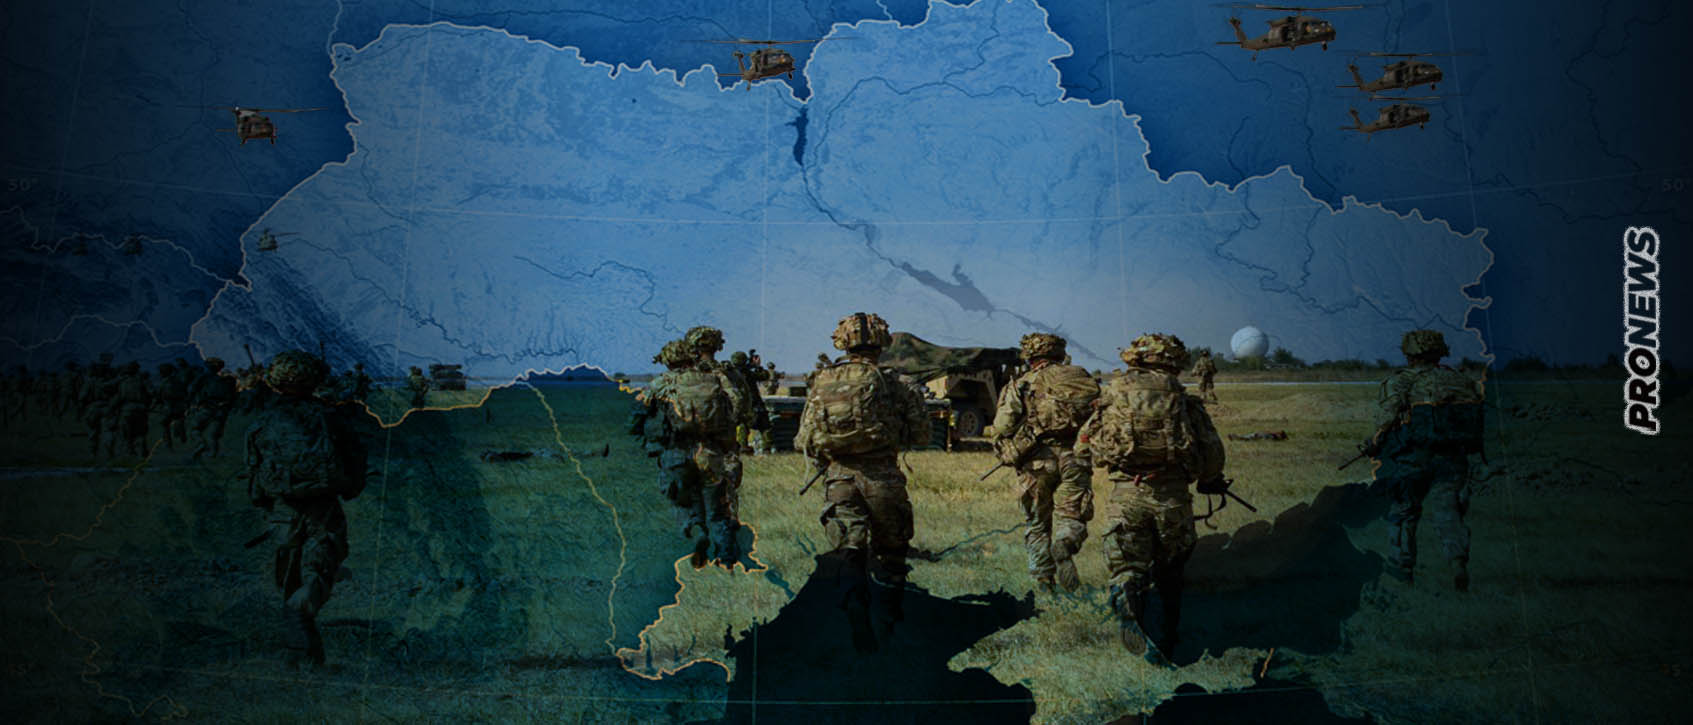 ΤΑSS: «20.000 Αμερικανοί αναπτύχθηκαν στην Πολωνία για εμπλοκή στην Ουκρανία εναντίον των ρωσικών δυνάμεων»